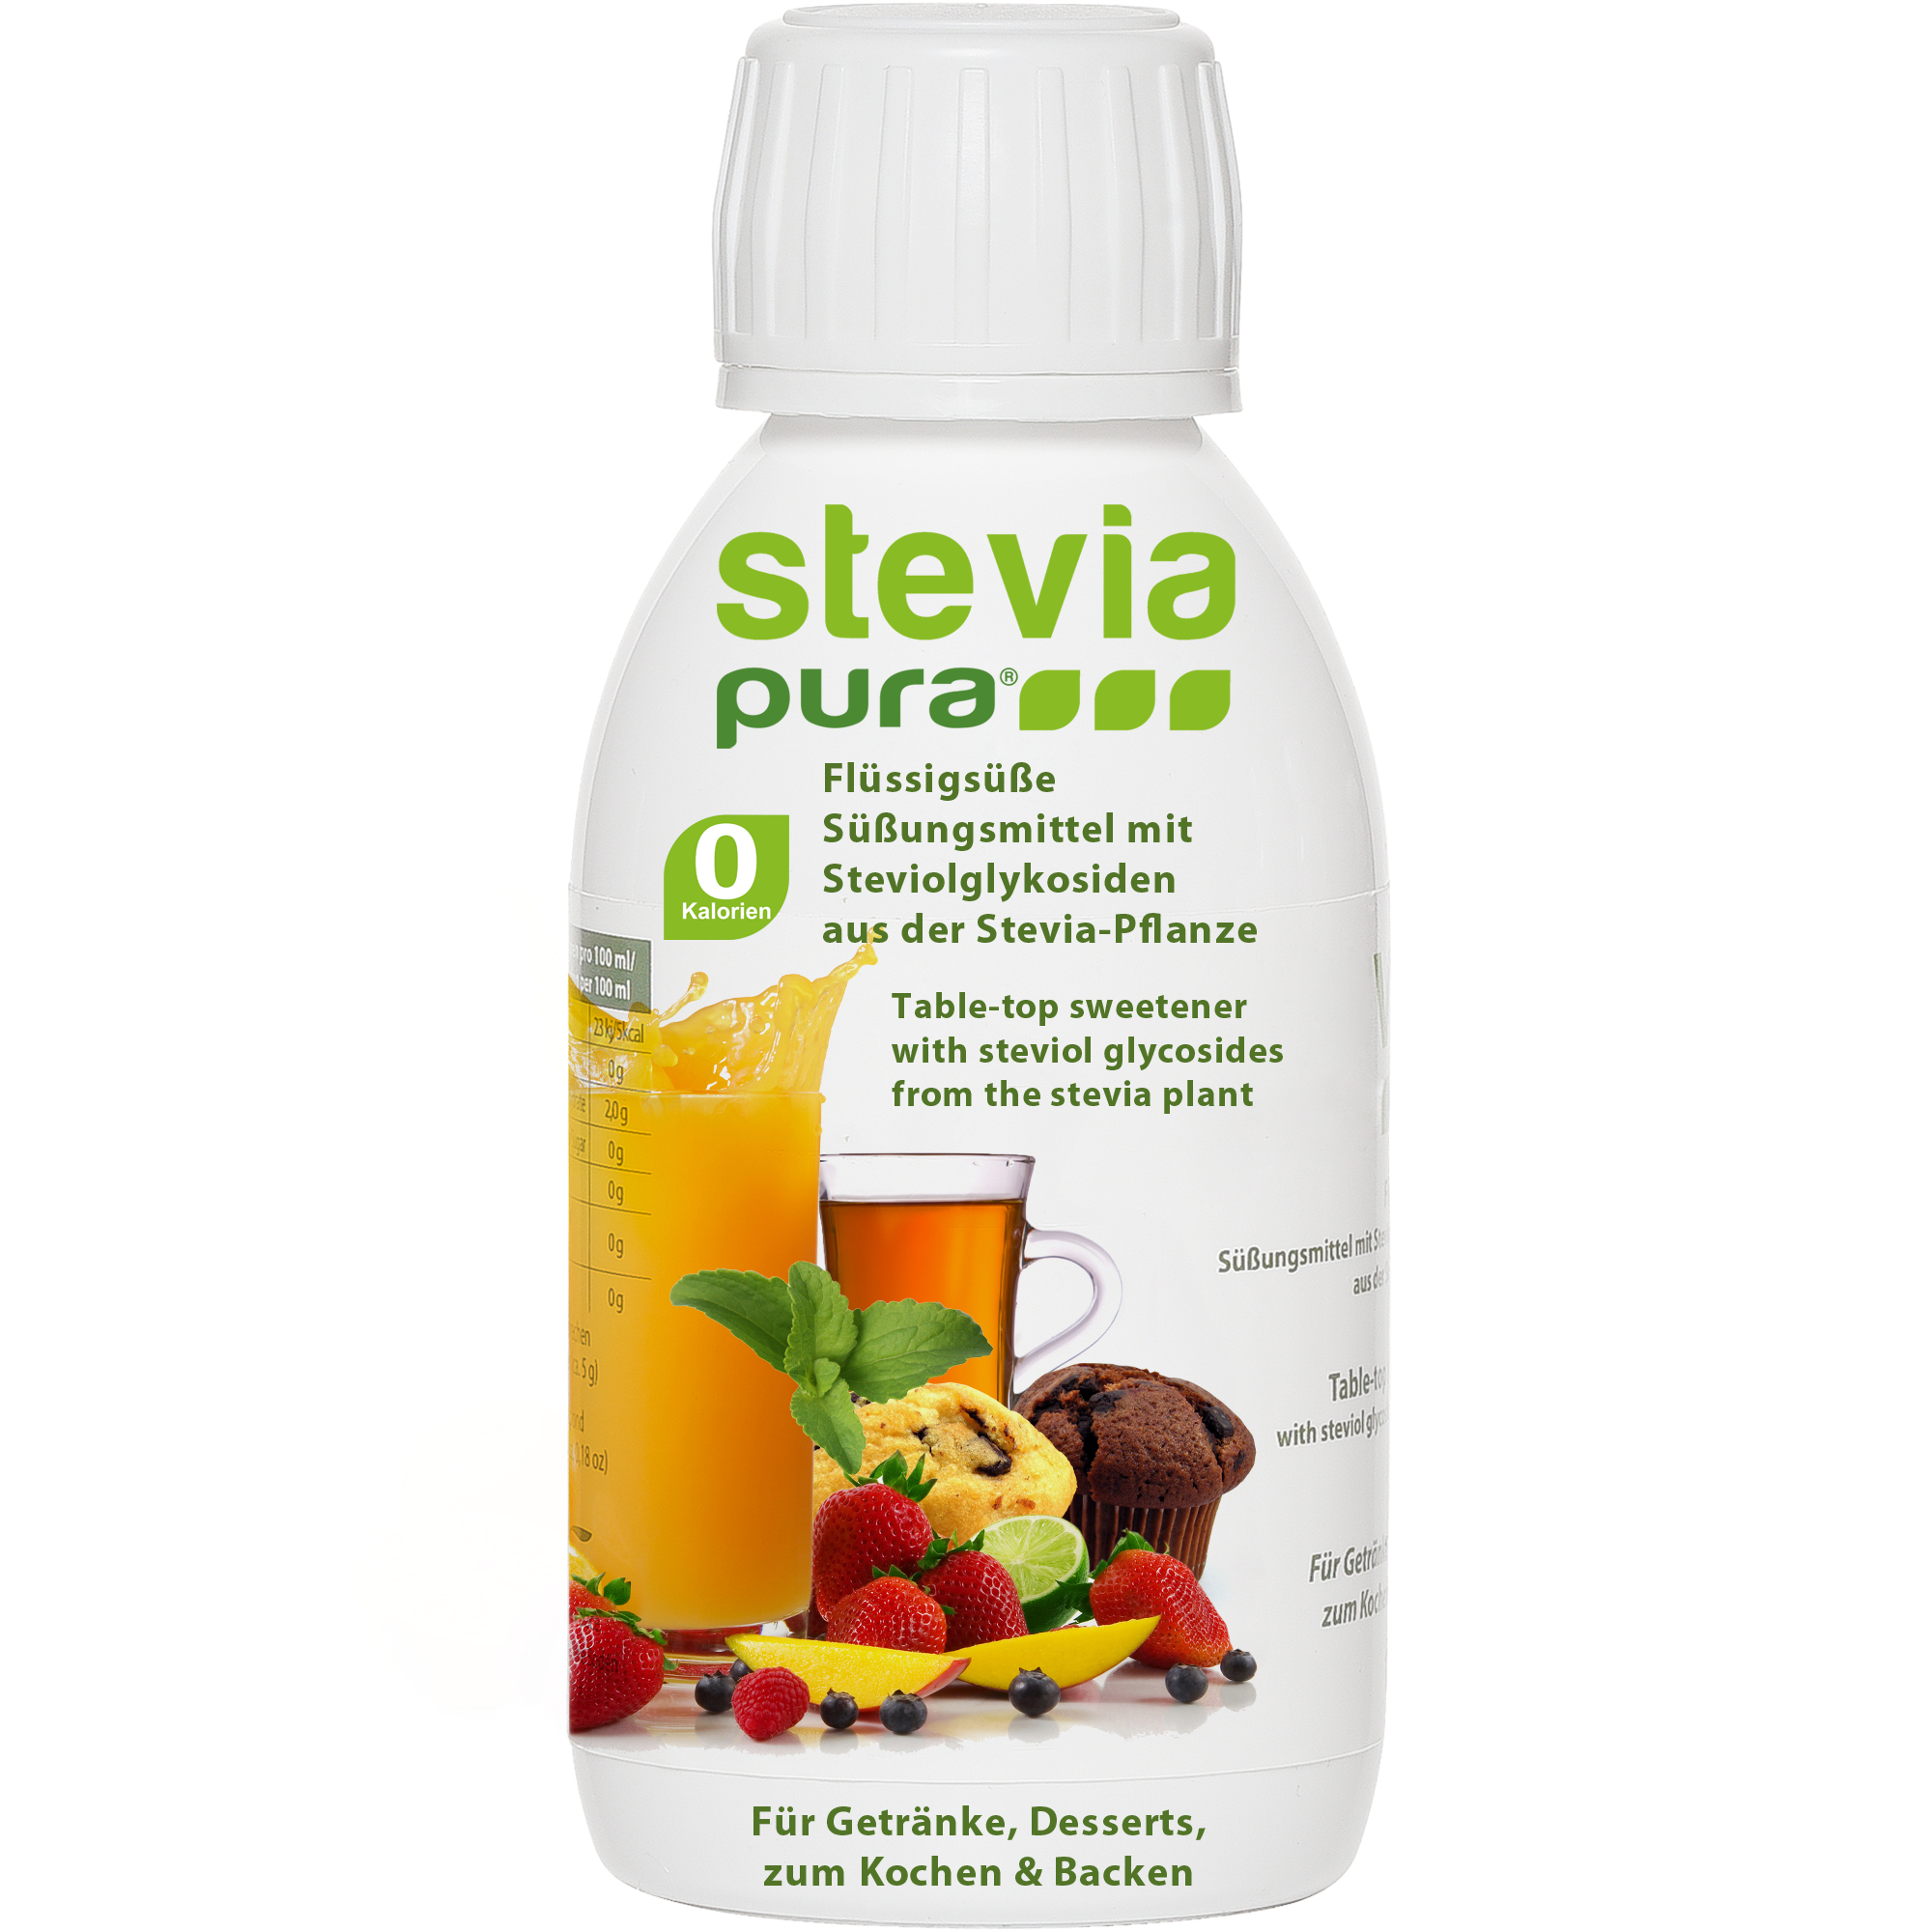 Um produto de qualidade do Grupo Stevia: steviapura Stevia adoçante líquido líquido Stevia.